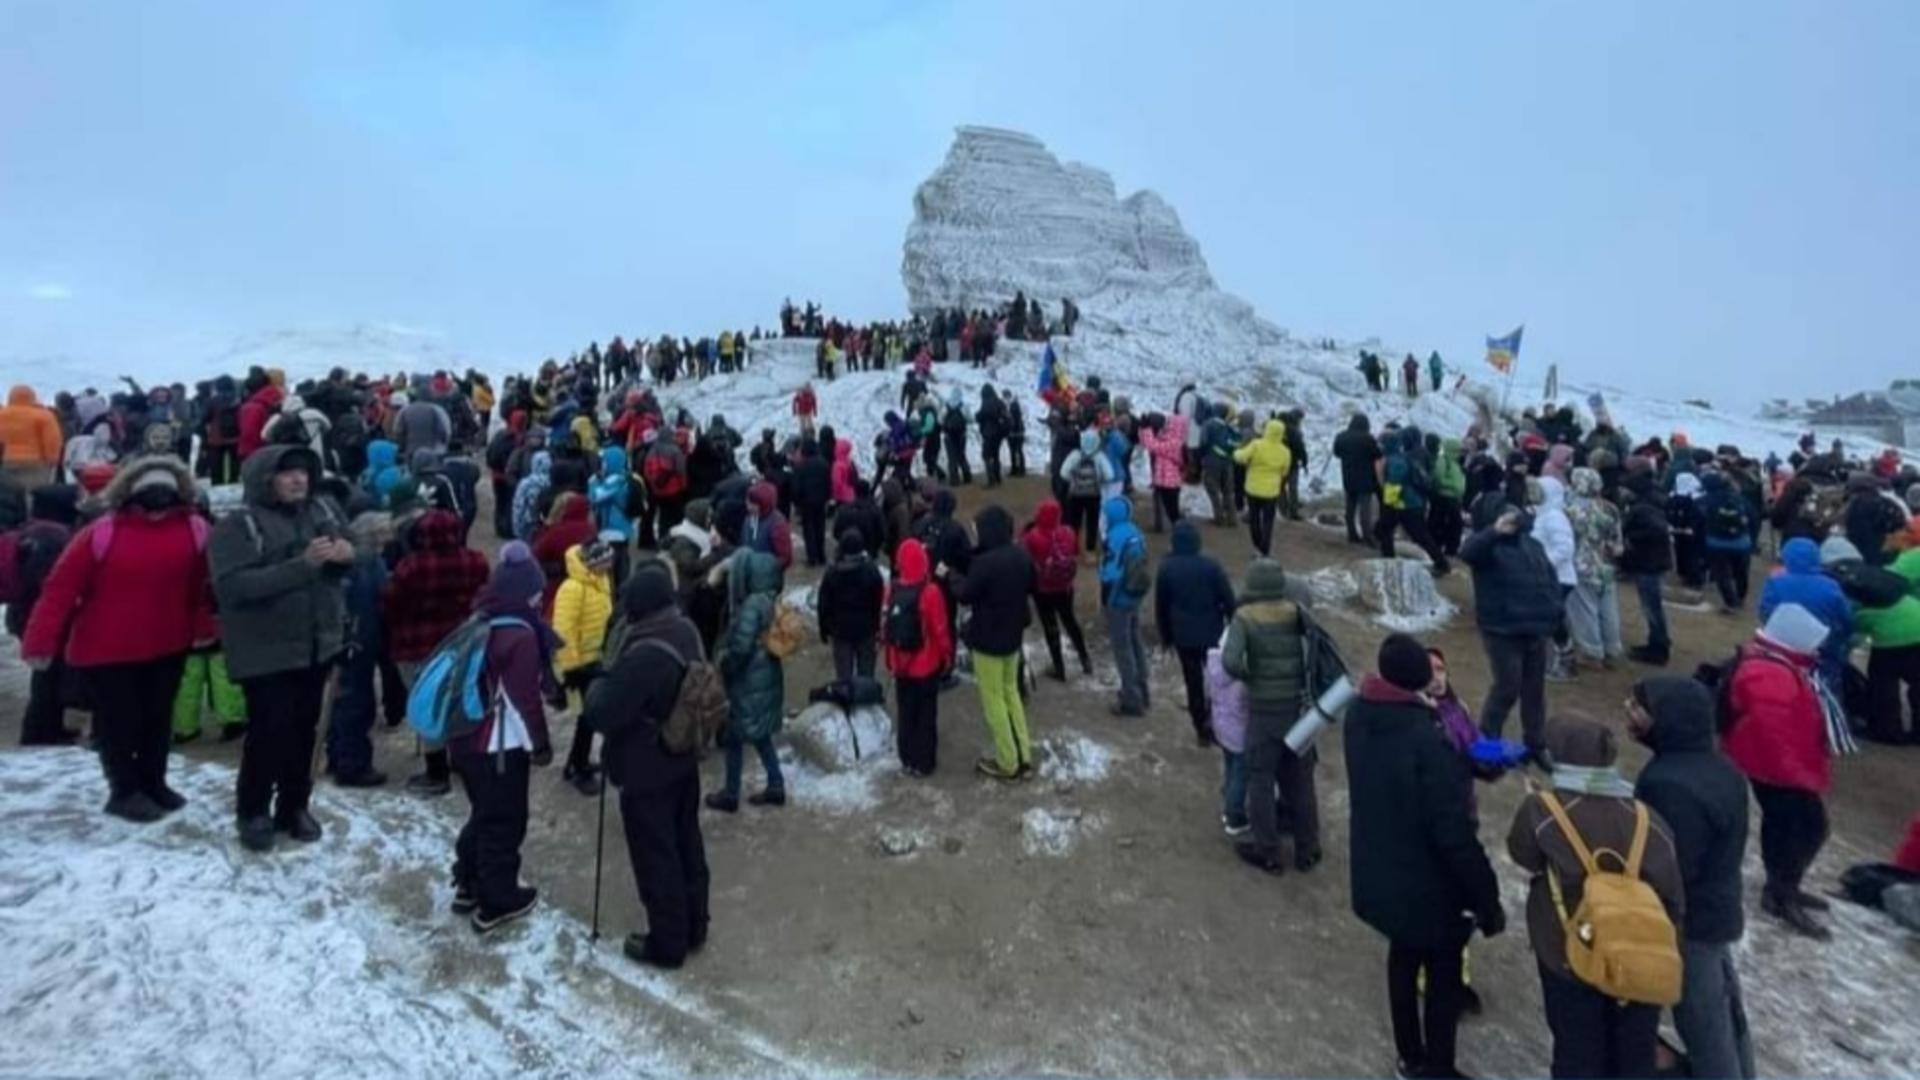 MII de turiști, înghesuiți în Bucegi, la Sfinx, pentru piramida energetică, au chemat Salvamontul